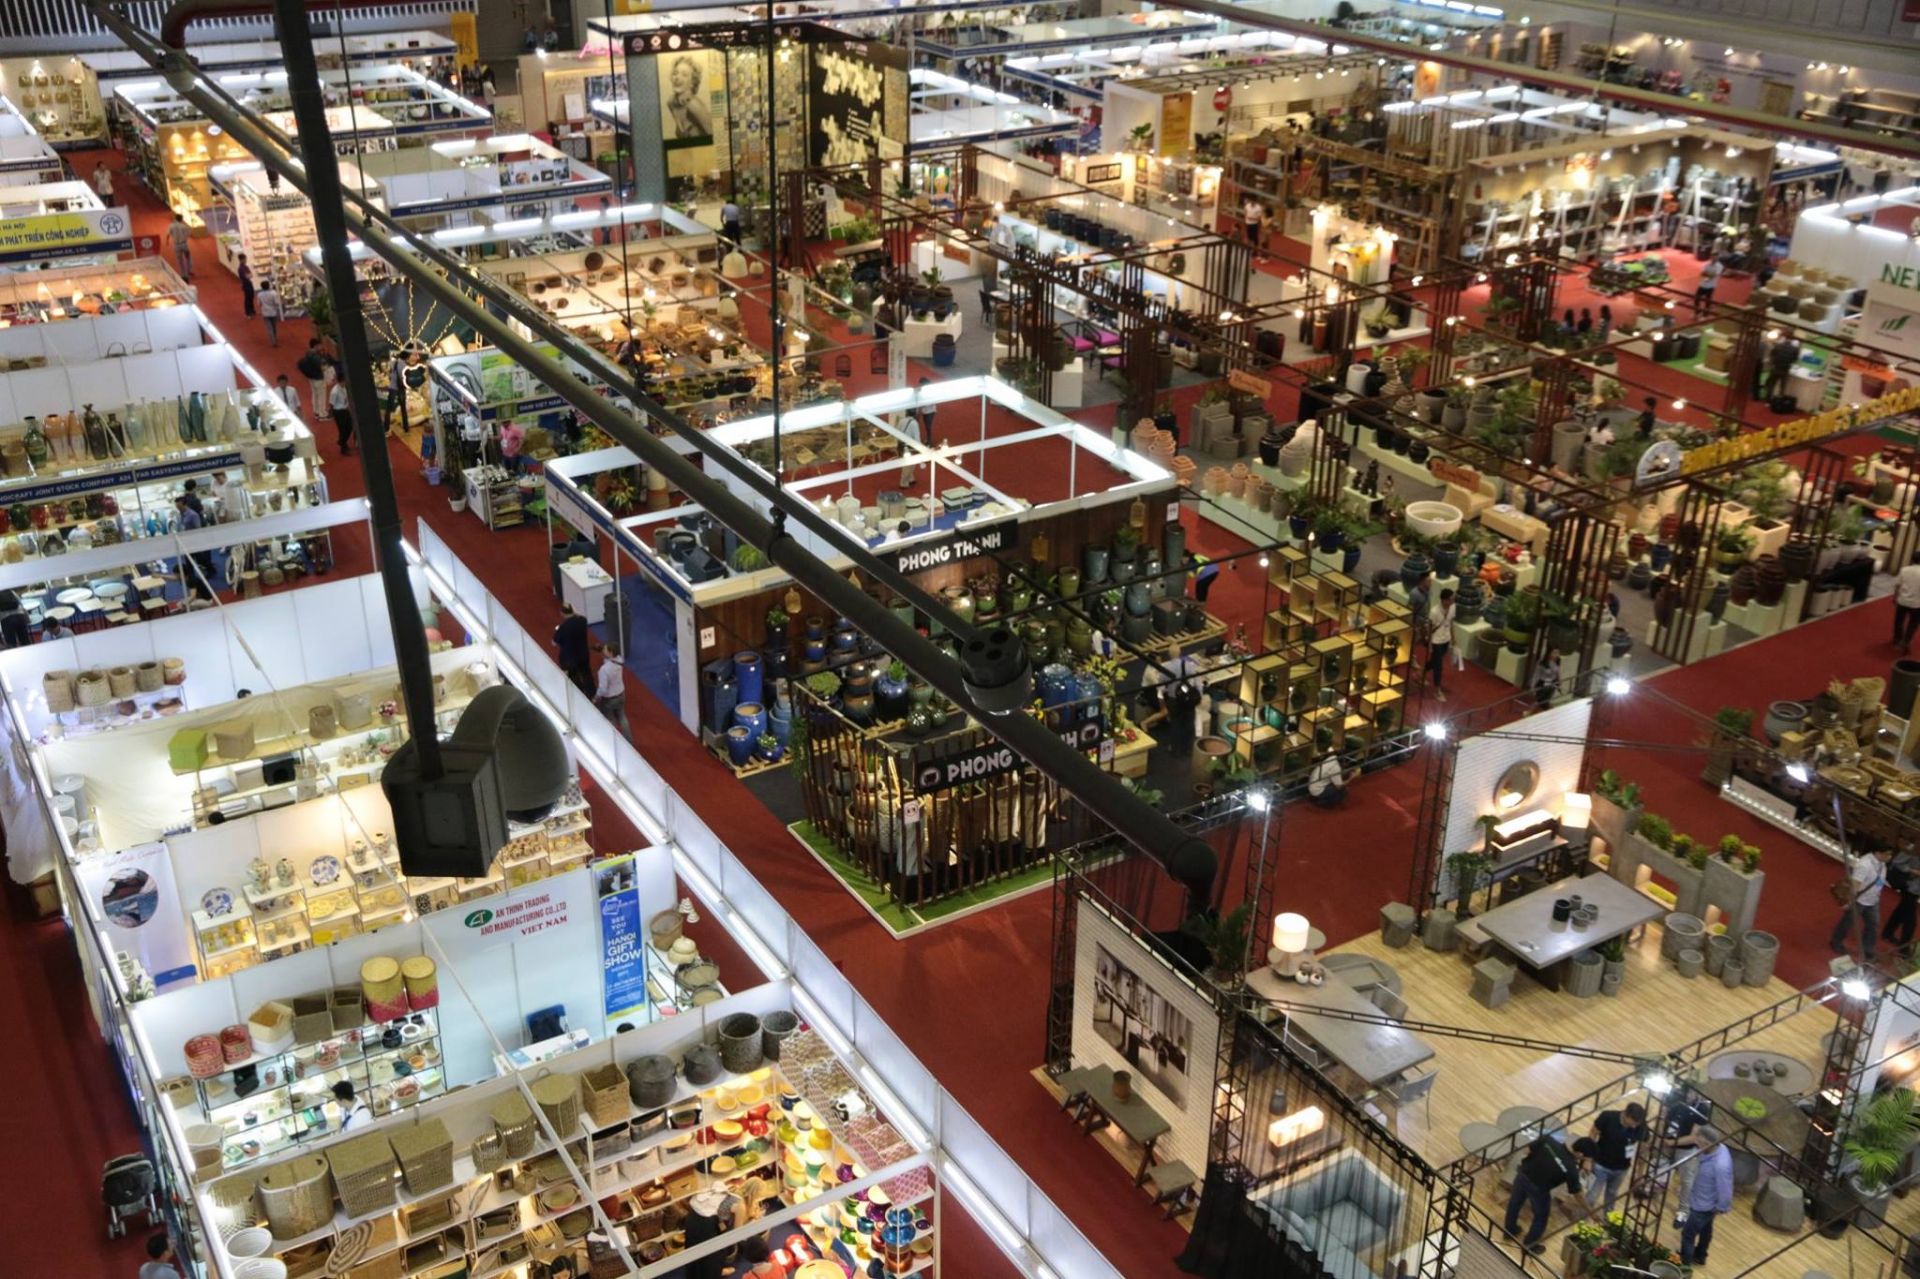 Hội chợ thường niên Lifestyle Vietnam thu hút hàng nghìn nhà nhập khẩu từ các quốc gia, vùng lãnh thổ trên thế giới đến tìm hiểu sản phẩm thủ công mỹ nghệ của Việt Nam